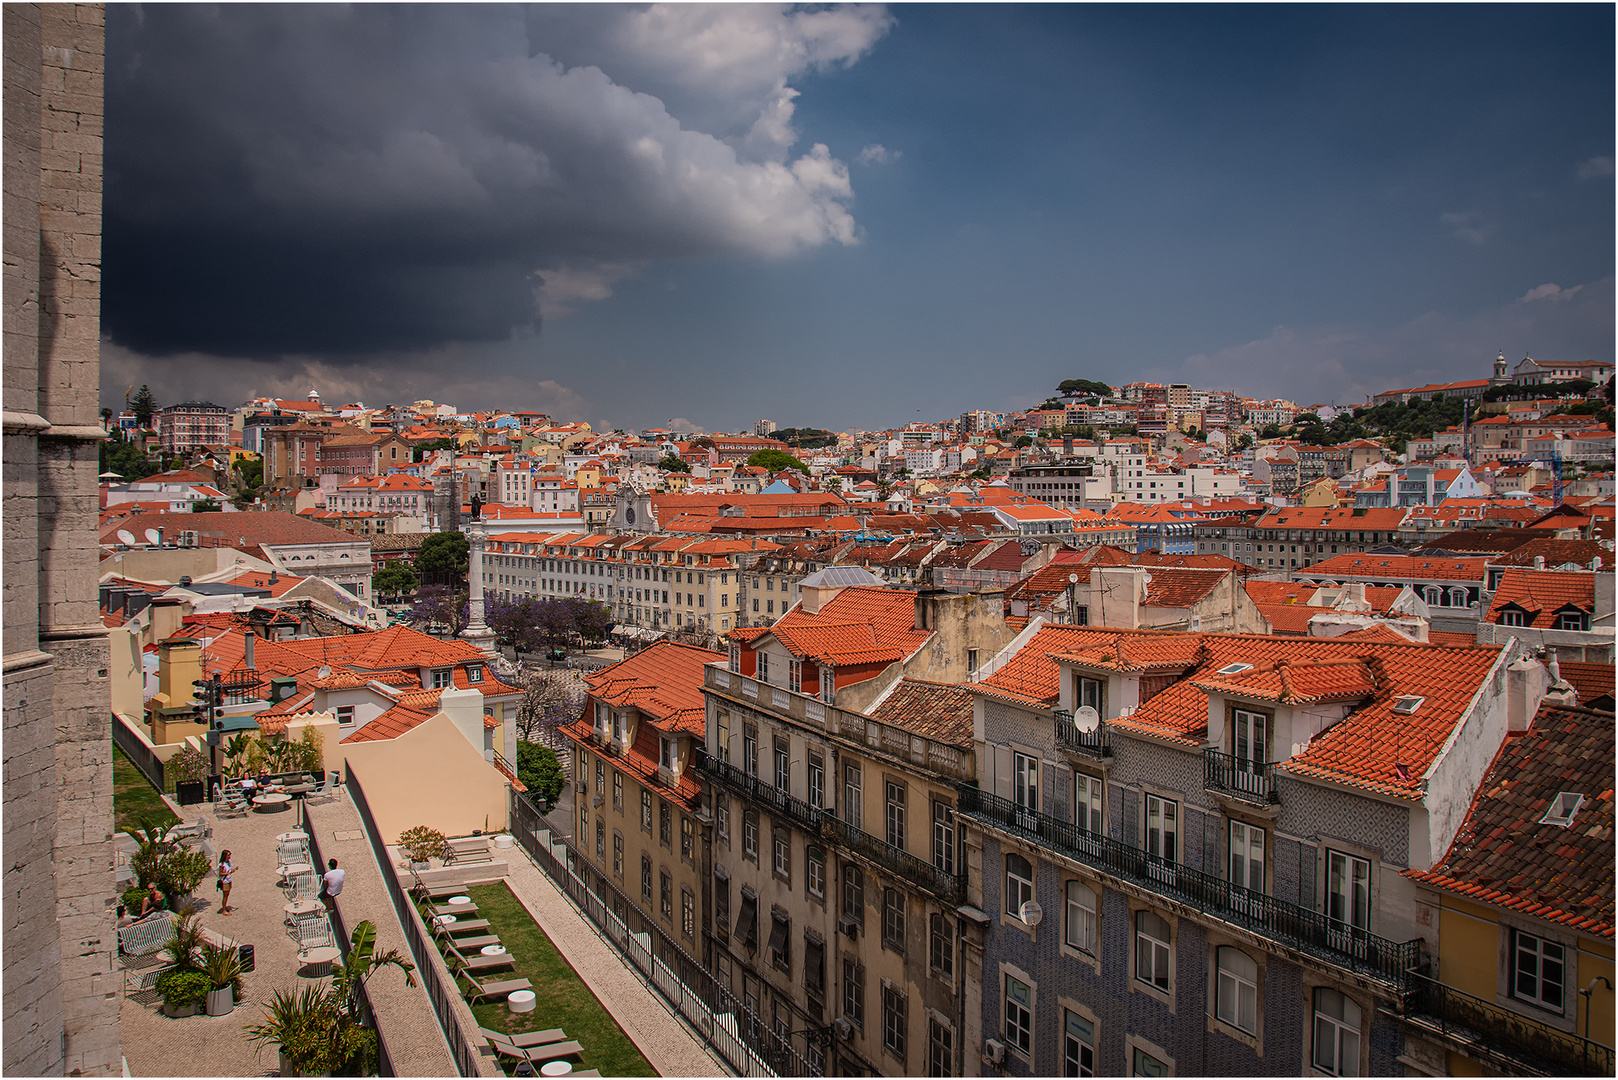  Gewitter über Lissabon +++